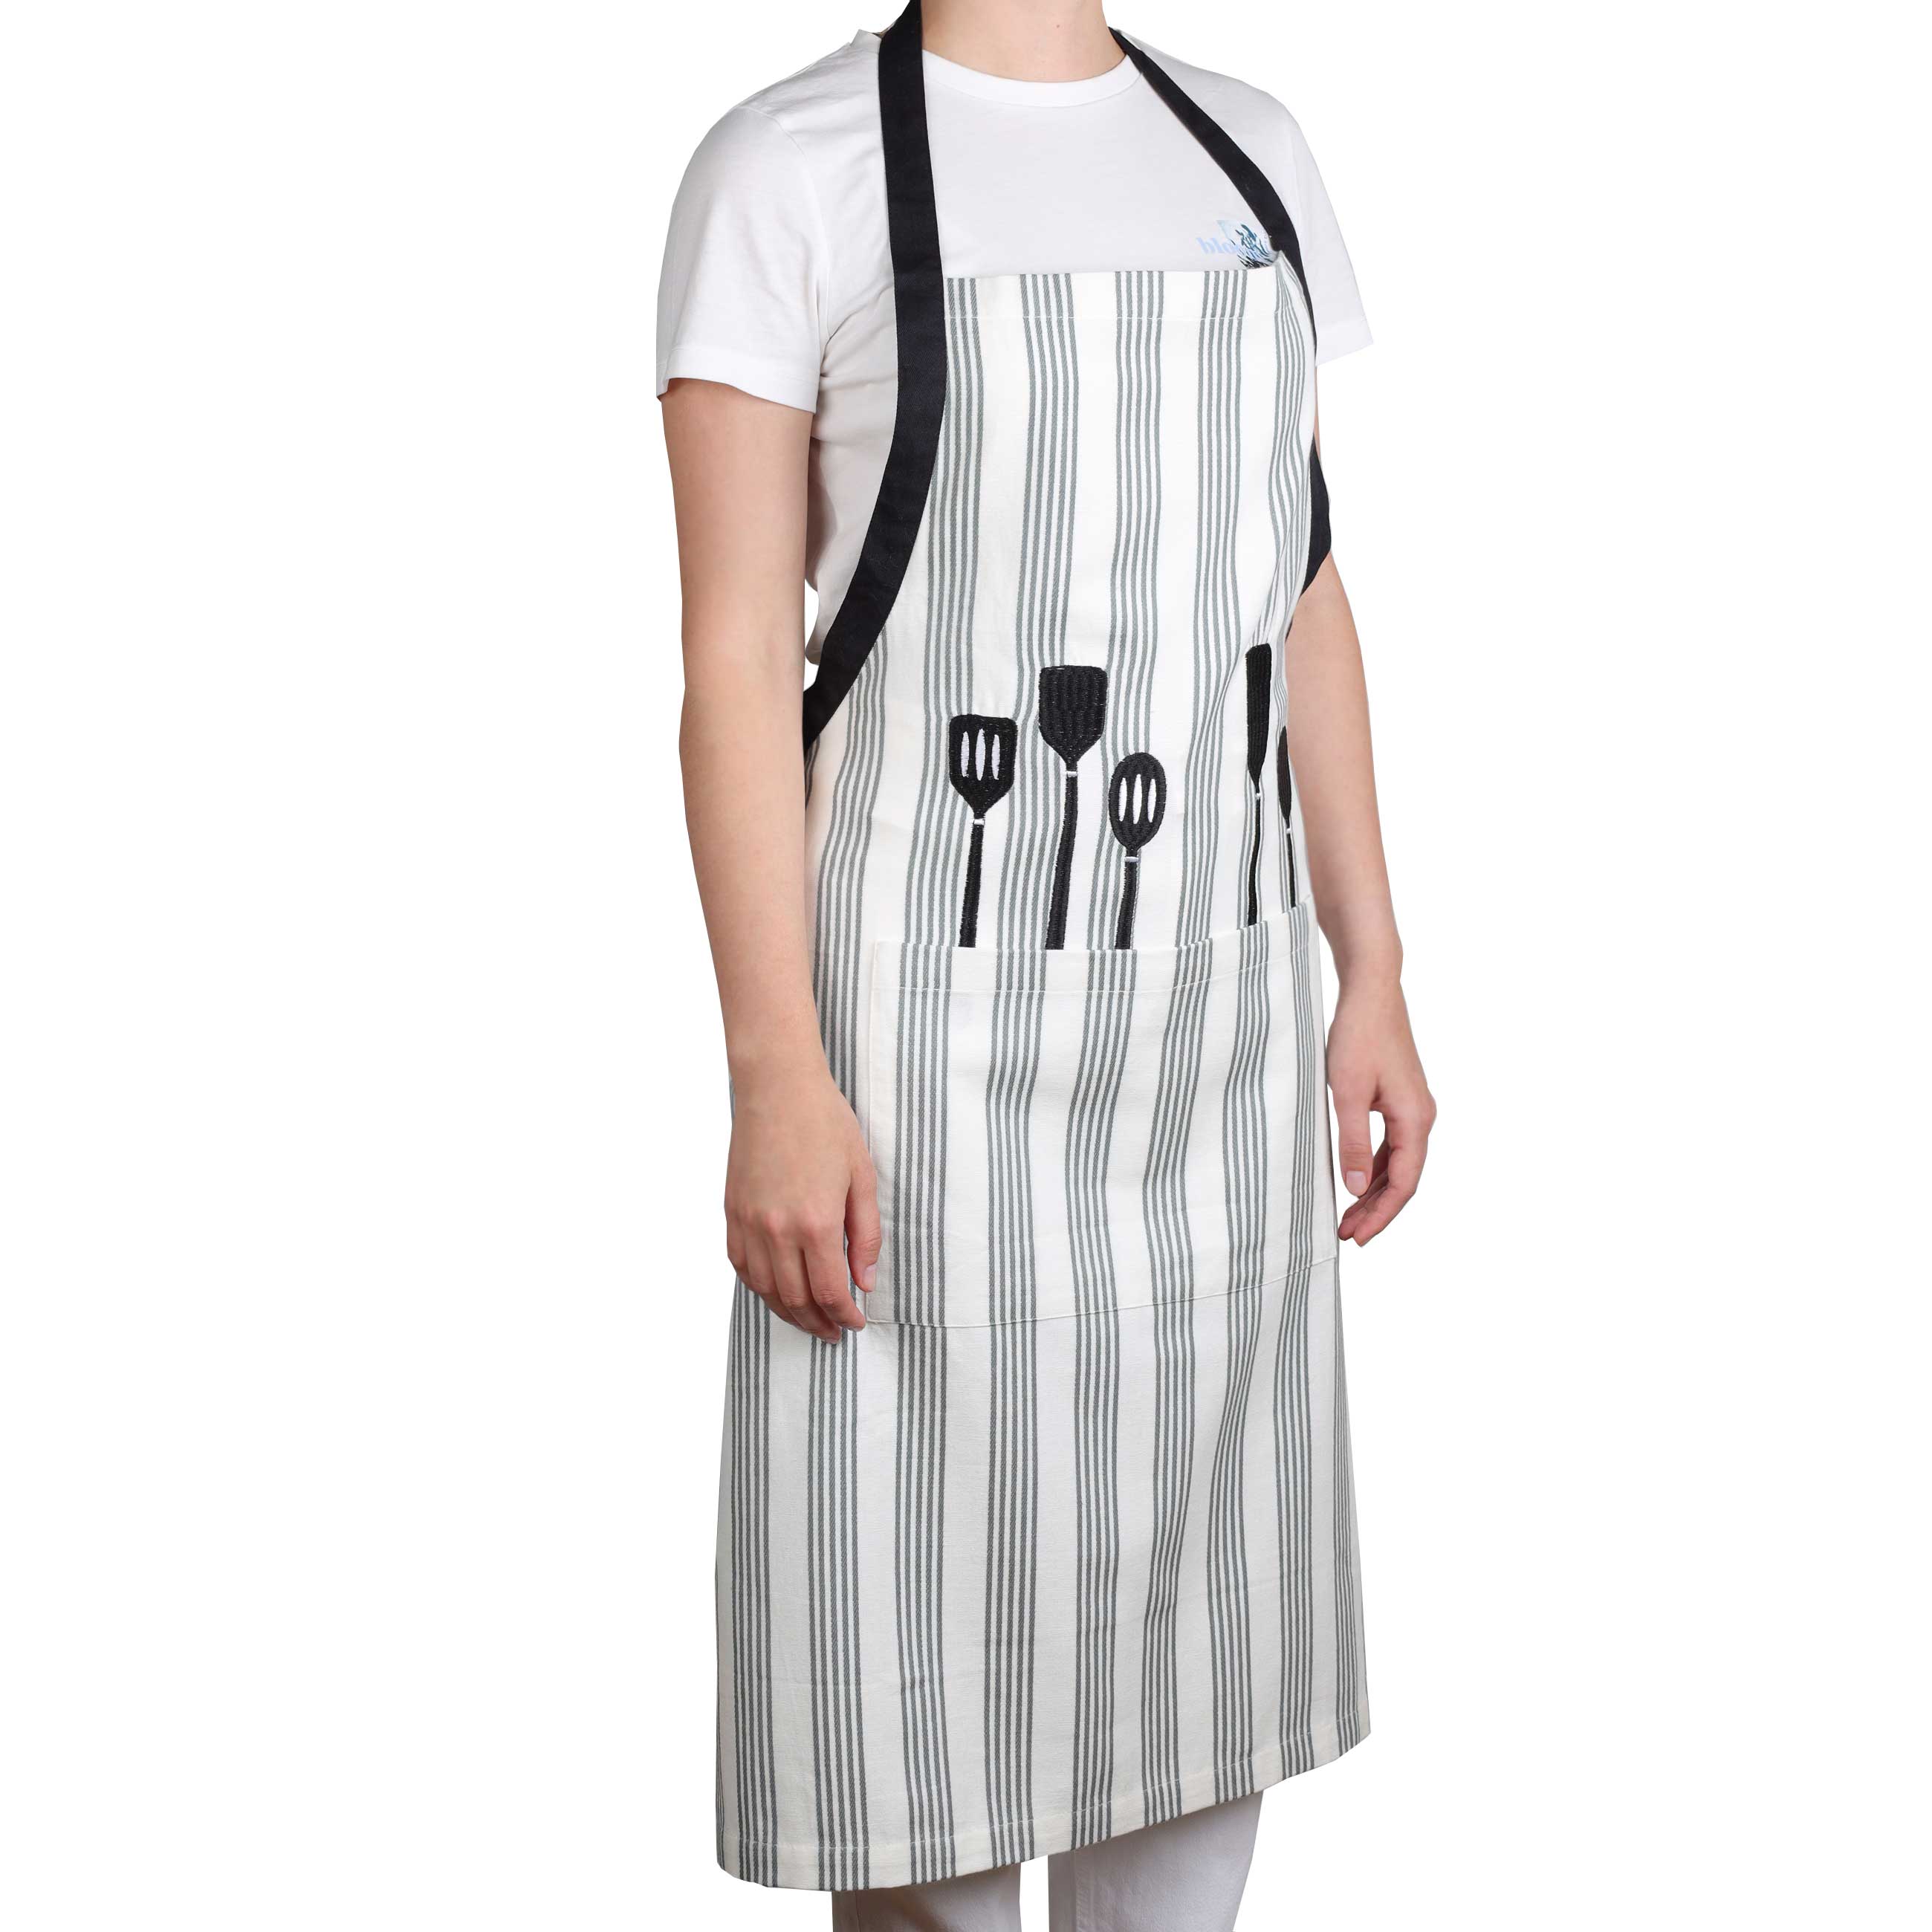 Фартук, 76x91 см, хлопок, белый, Приборы, Striped kitchen изображение № 3